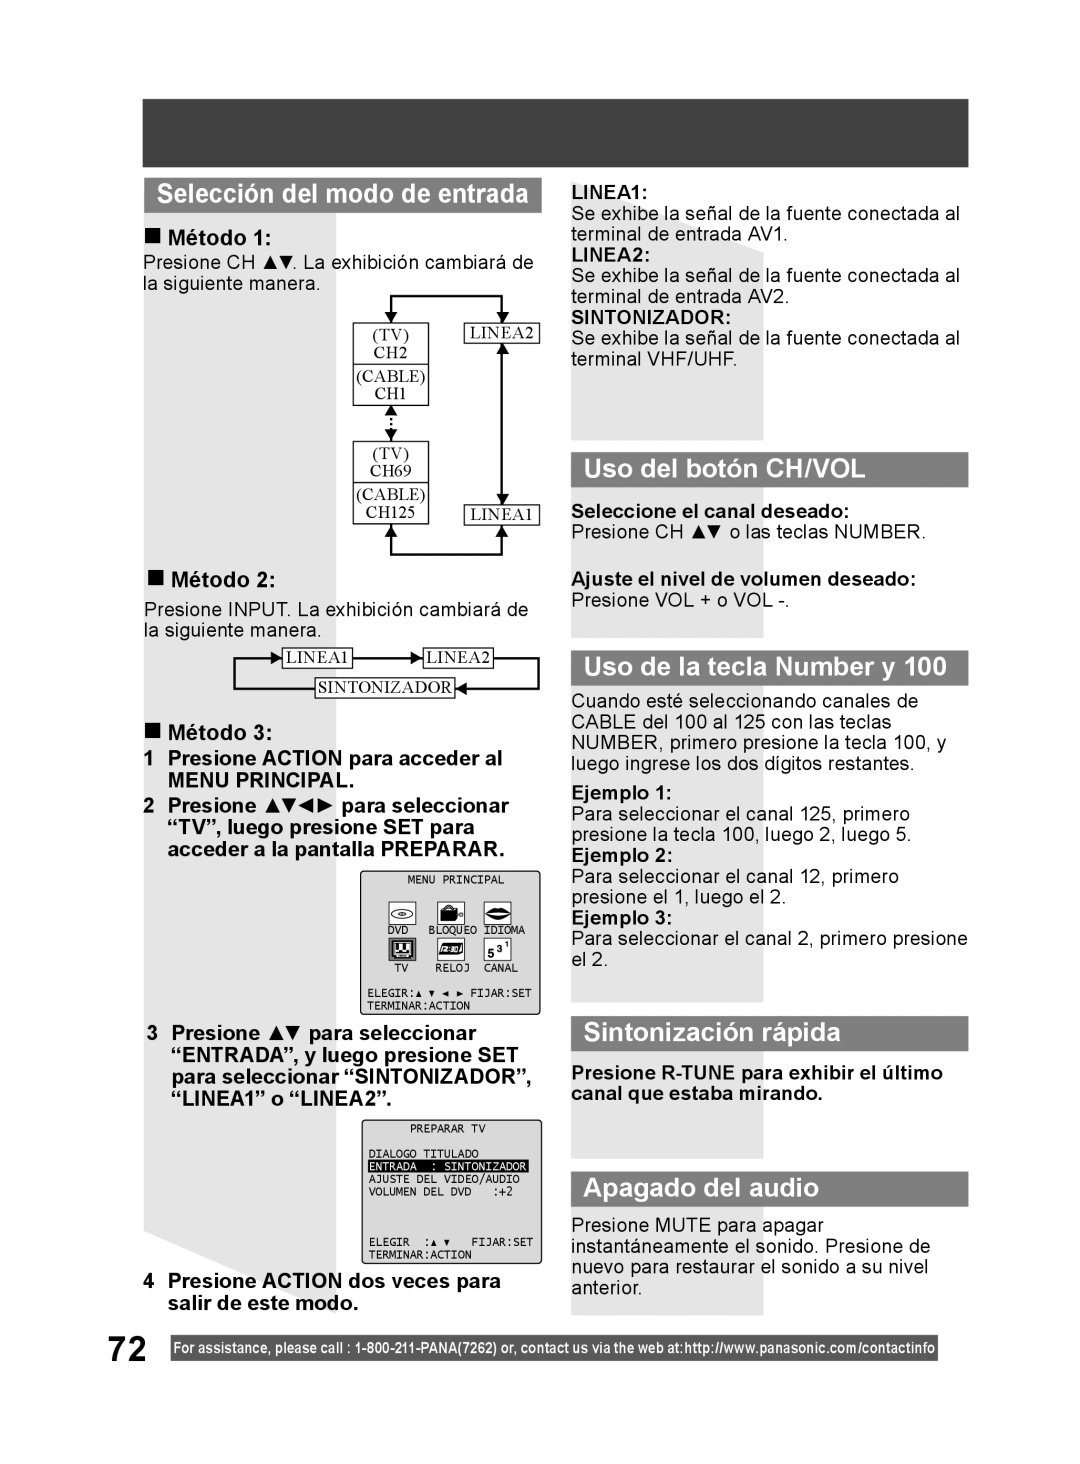 Panasonic PV DF2004 Selección del modo de entrada, Uso del botón CH/VOL, Uso de la tecla Number y, Sintonización rápida 